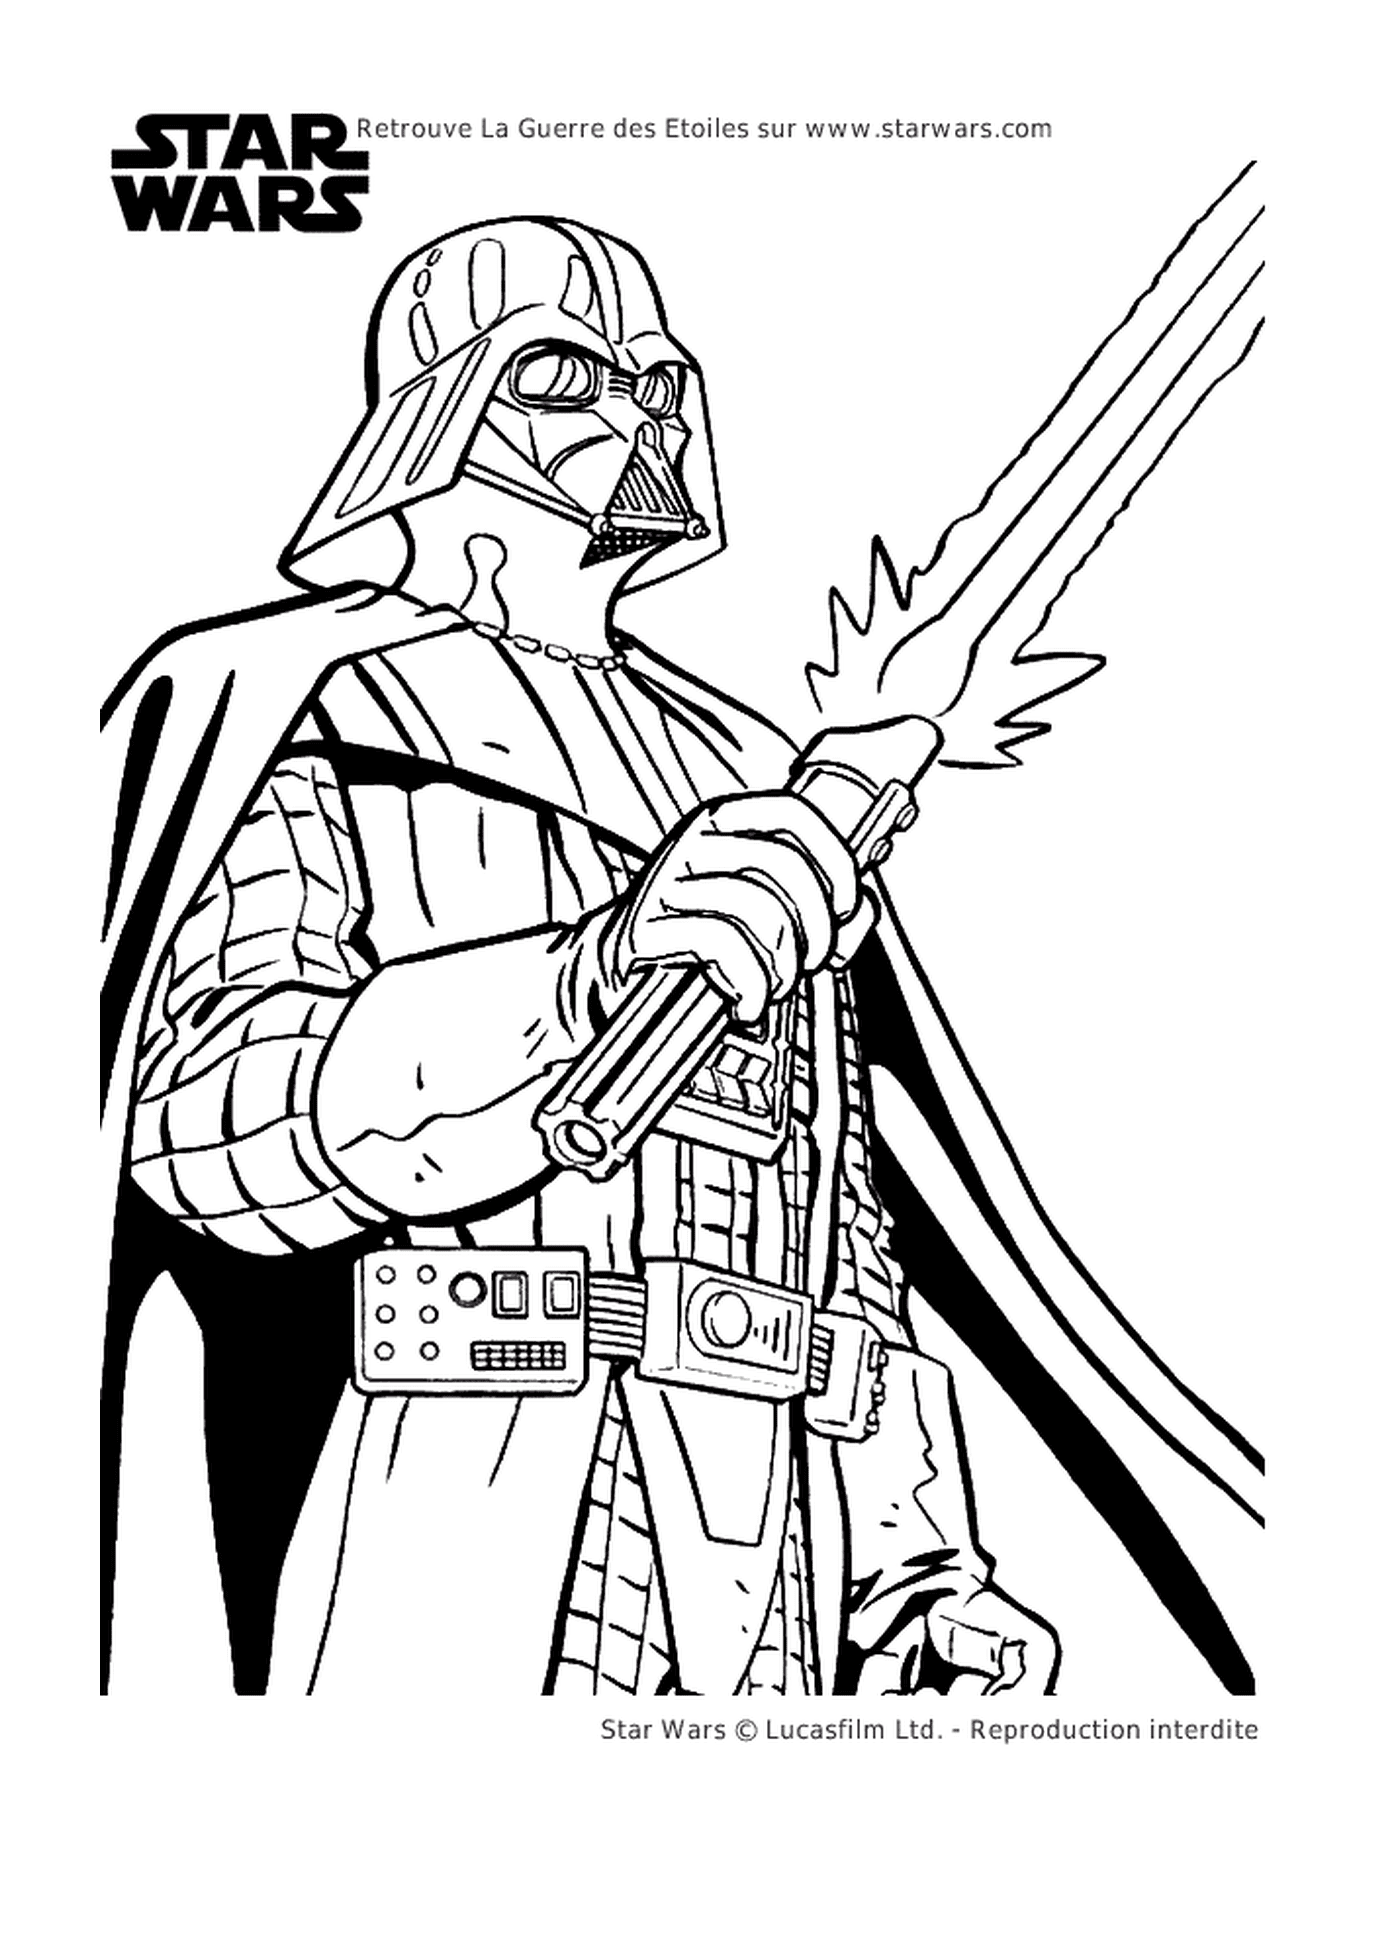  Darth Vader brandindo uma espada 